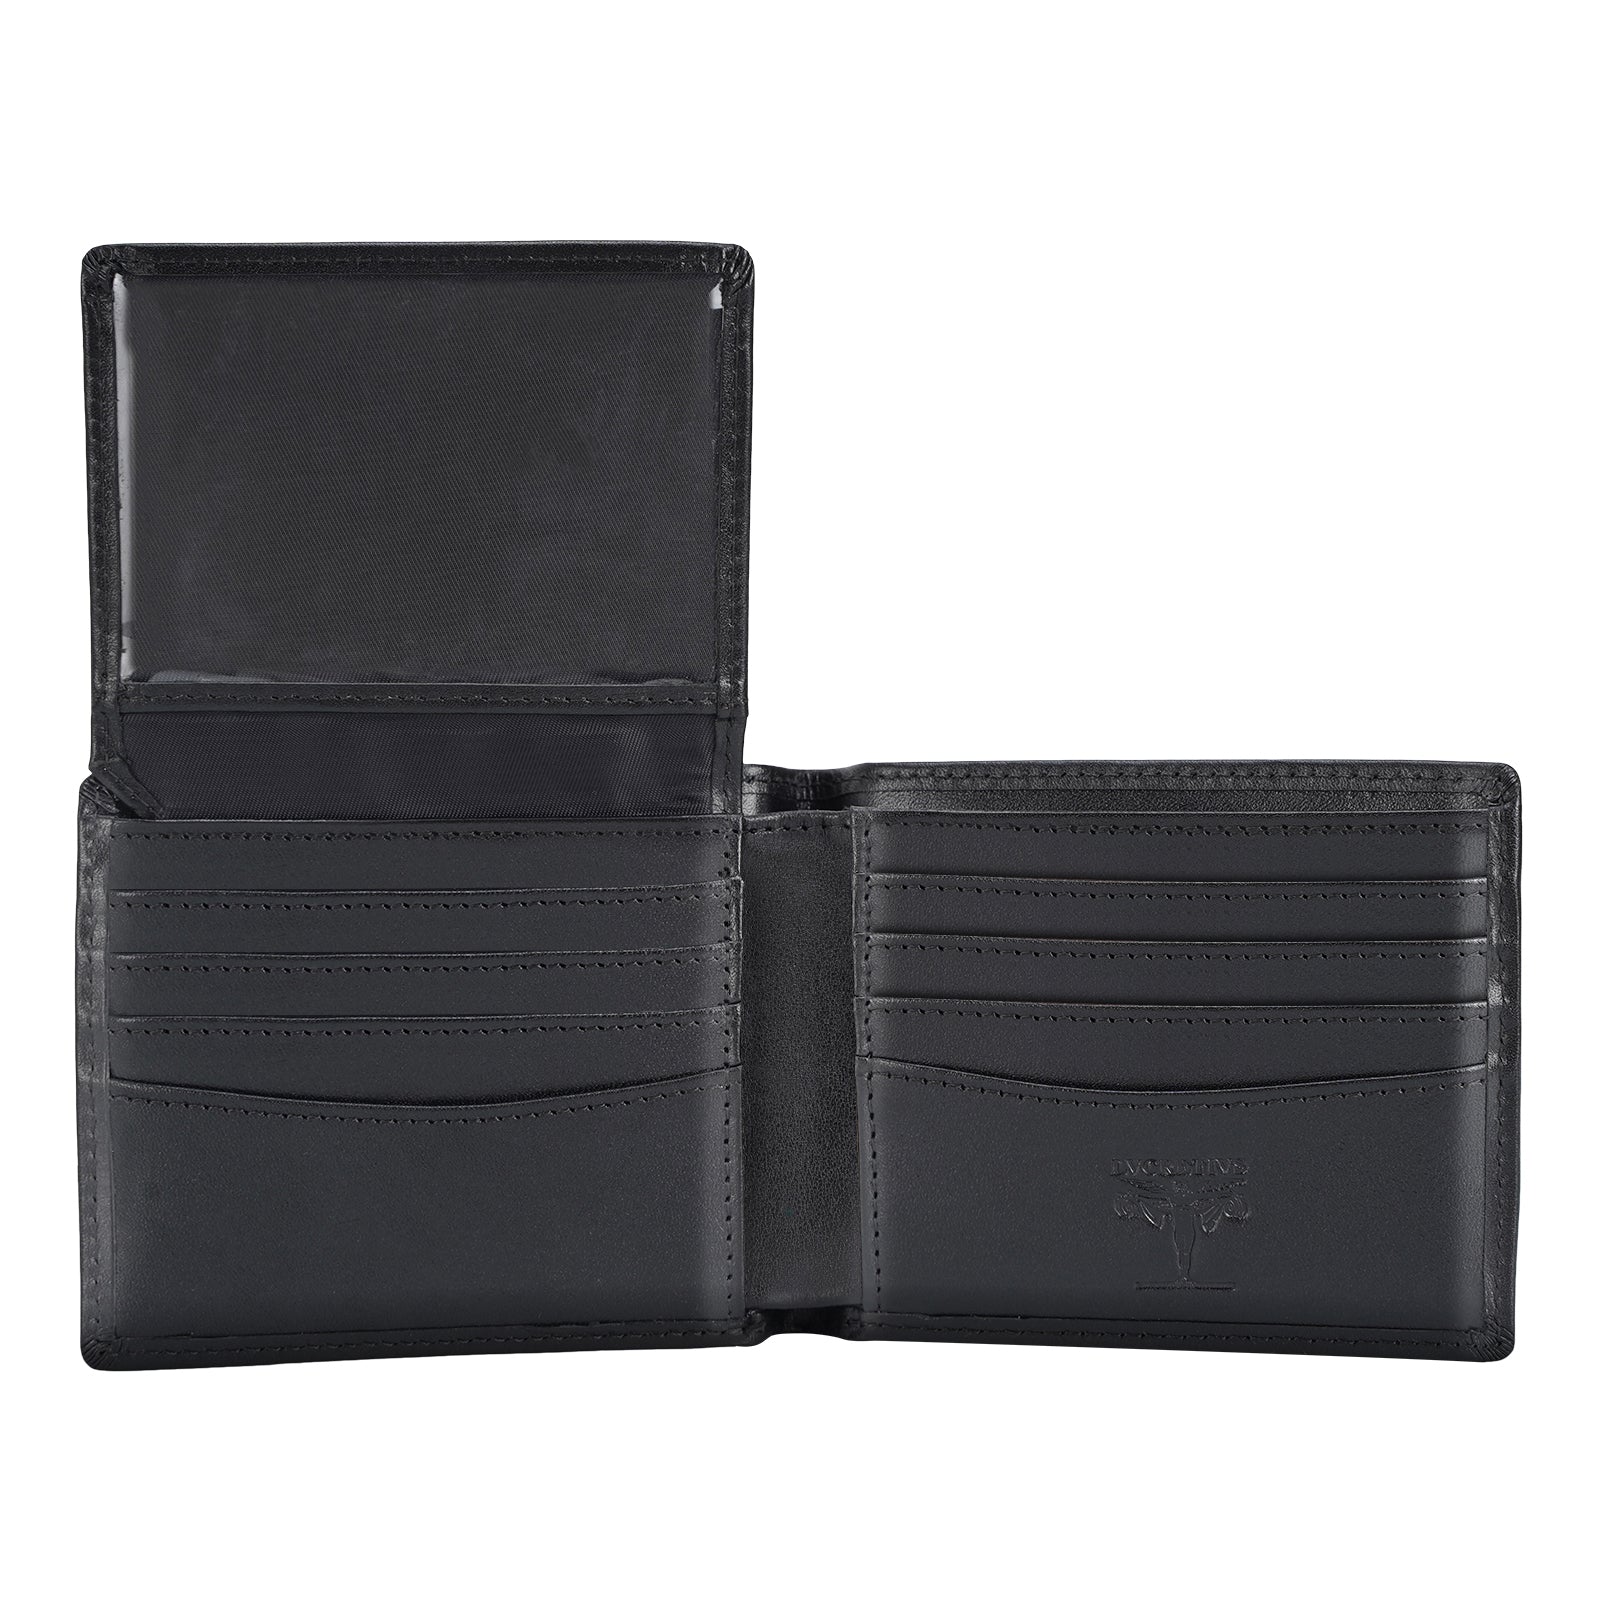 LVCRETIVS Vegetable Tanned Full Grain Leather RFID Blocking Bifold Wallet (Black,Inside)